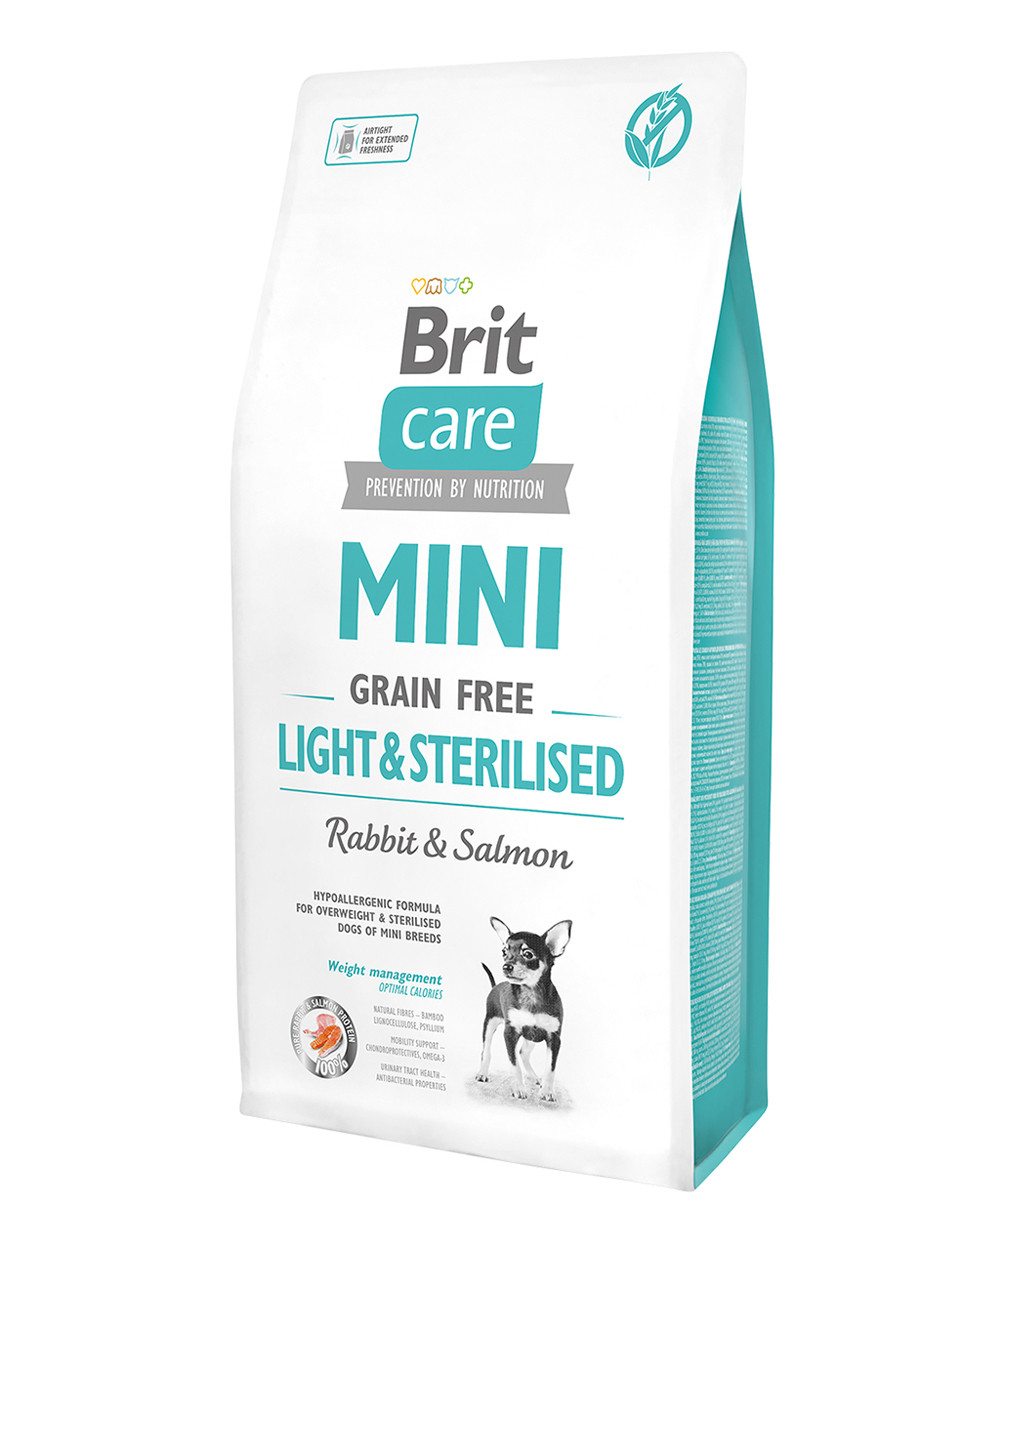 Сухой корм Care Mini Light & Sterilised, для взрослых собак миниатюрных пород с избыточным весом или стерилизованных, 7 кг Brit Care (136945959)